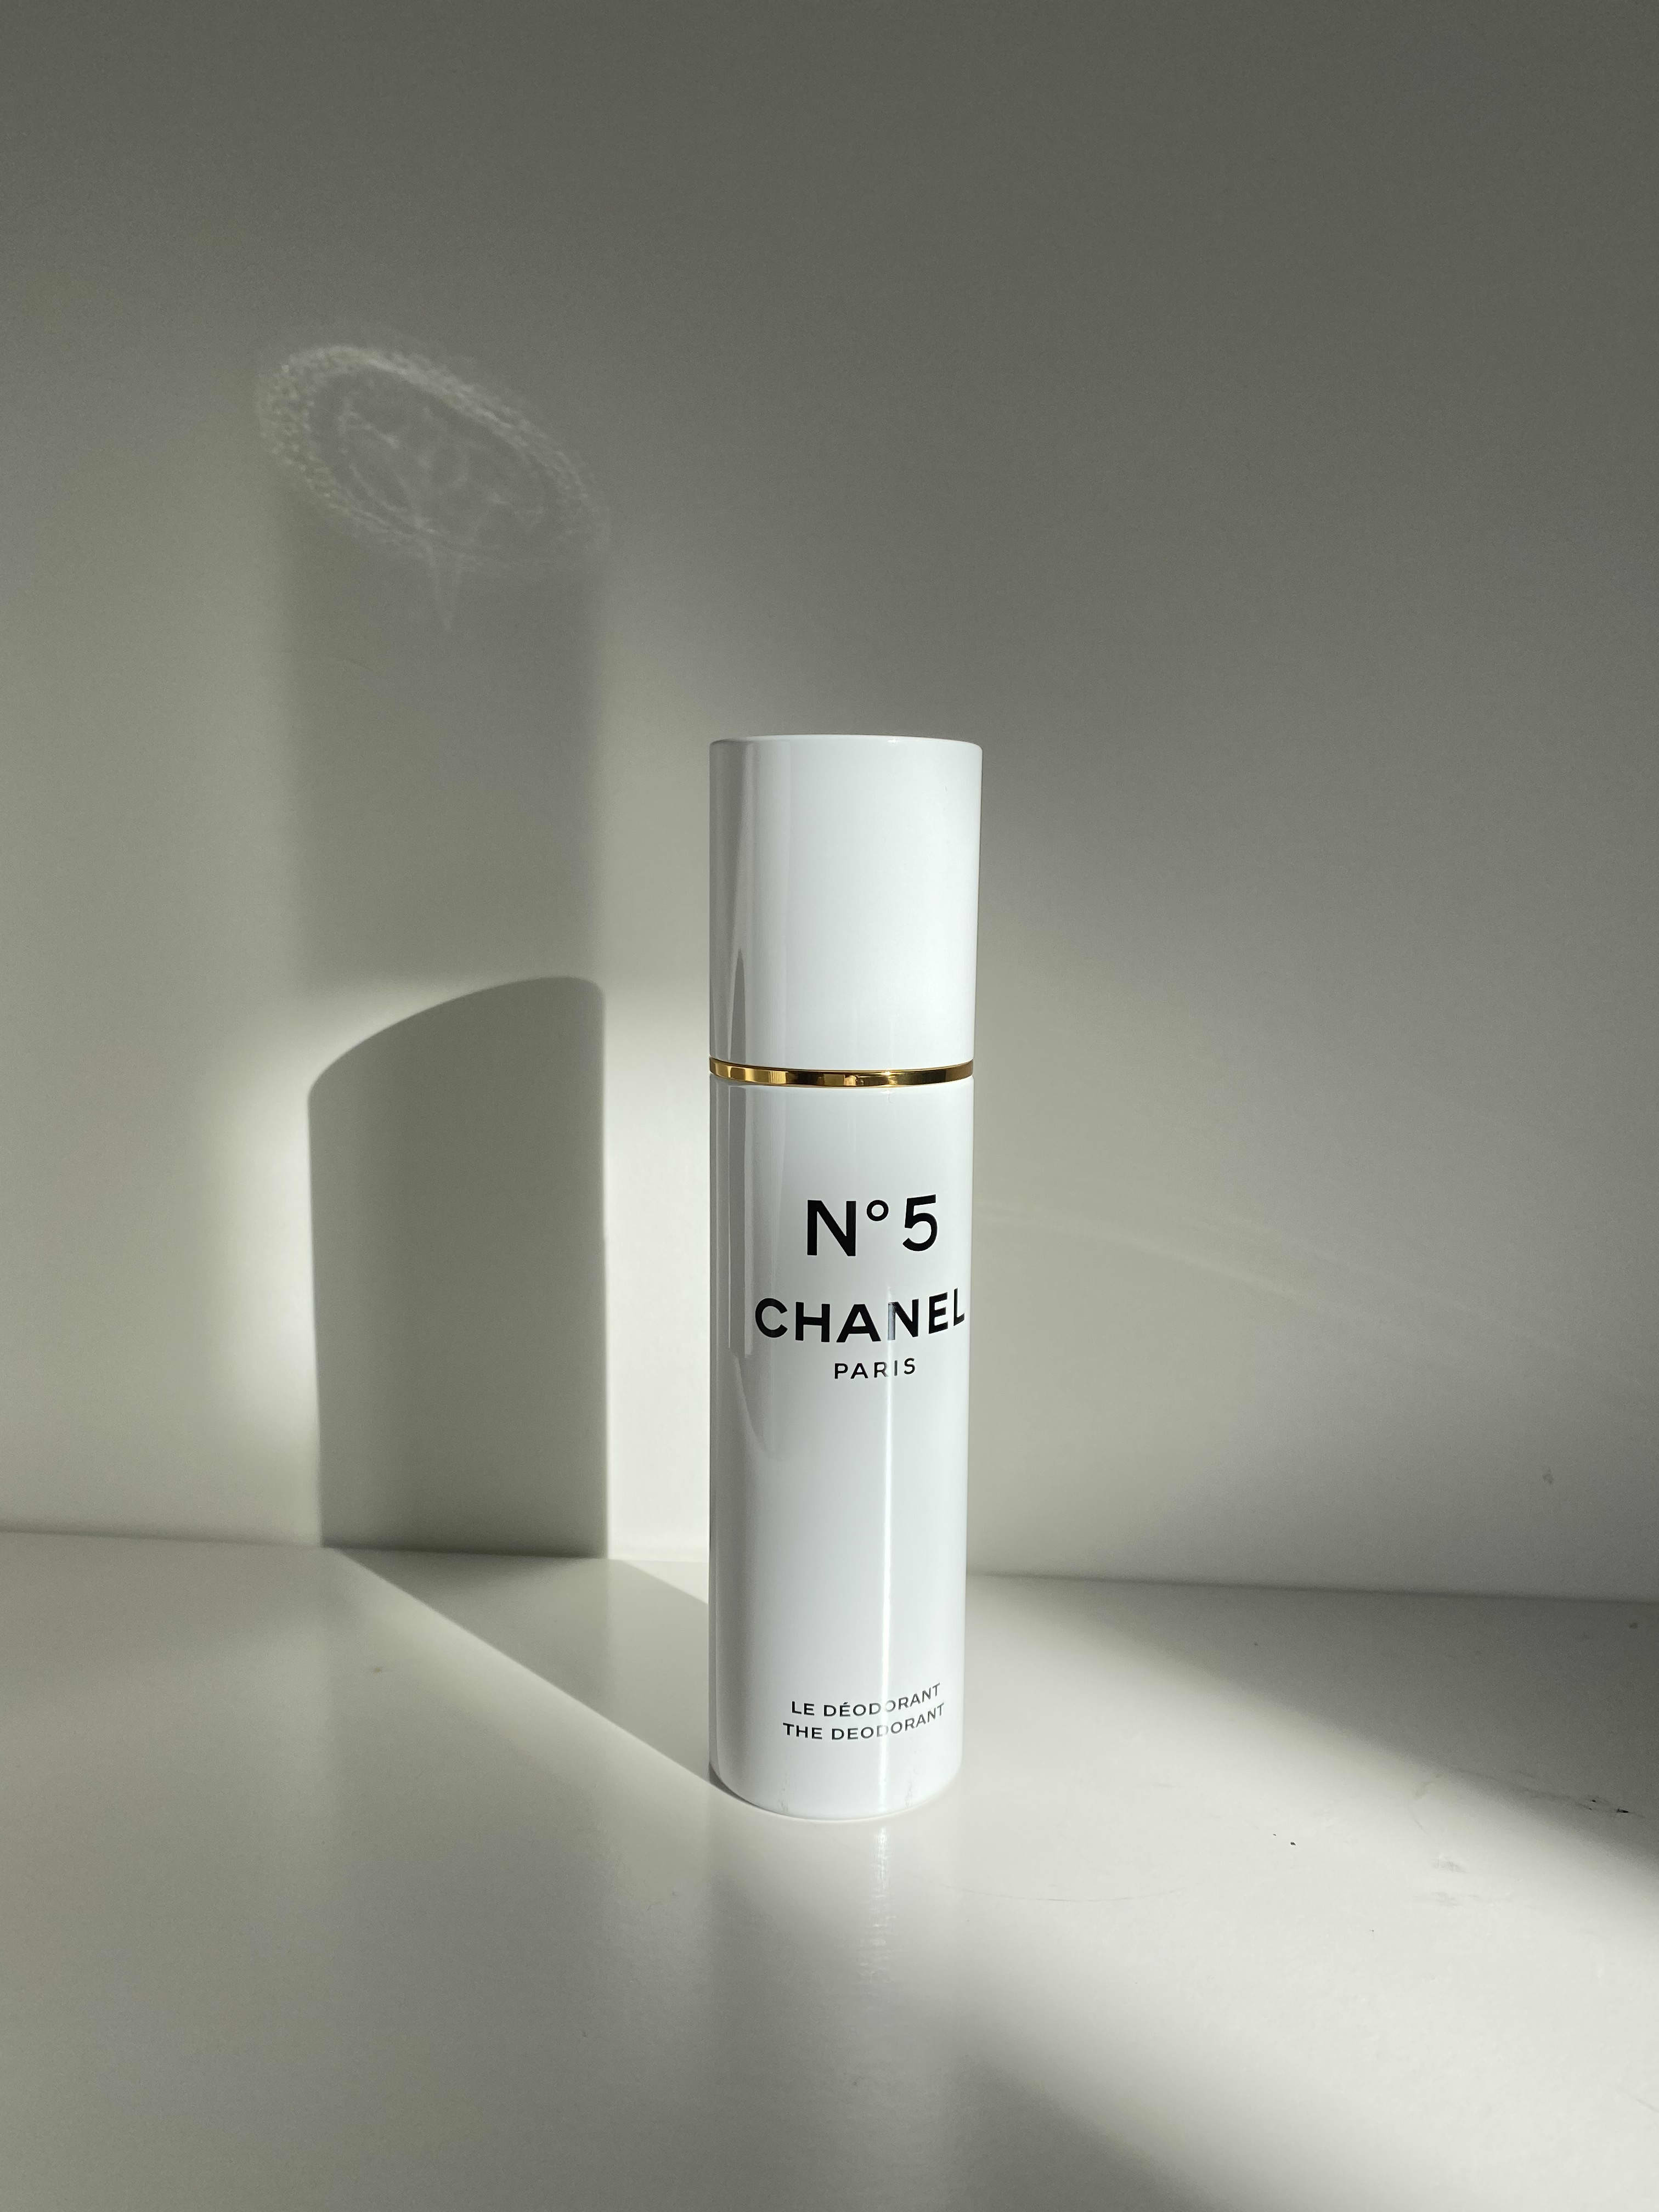 A classic scent - in deodorant form? Annabel Rivkin investigates